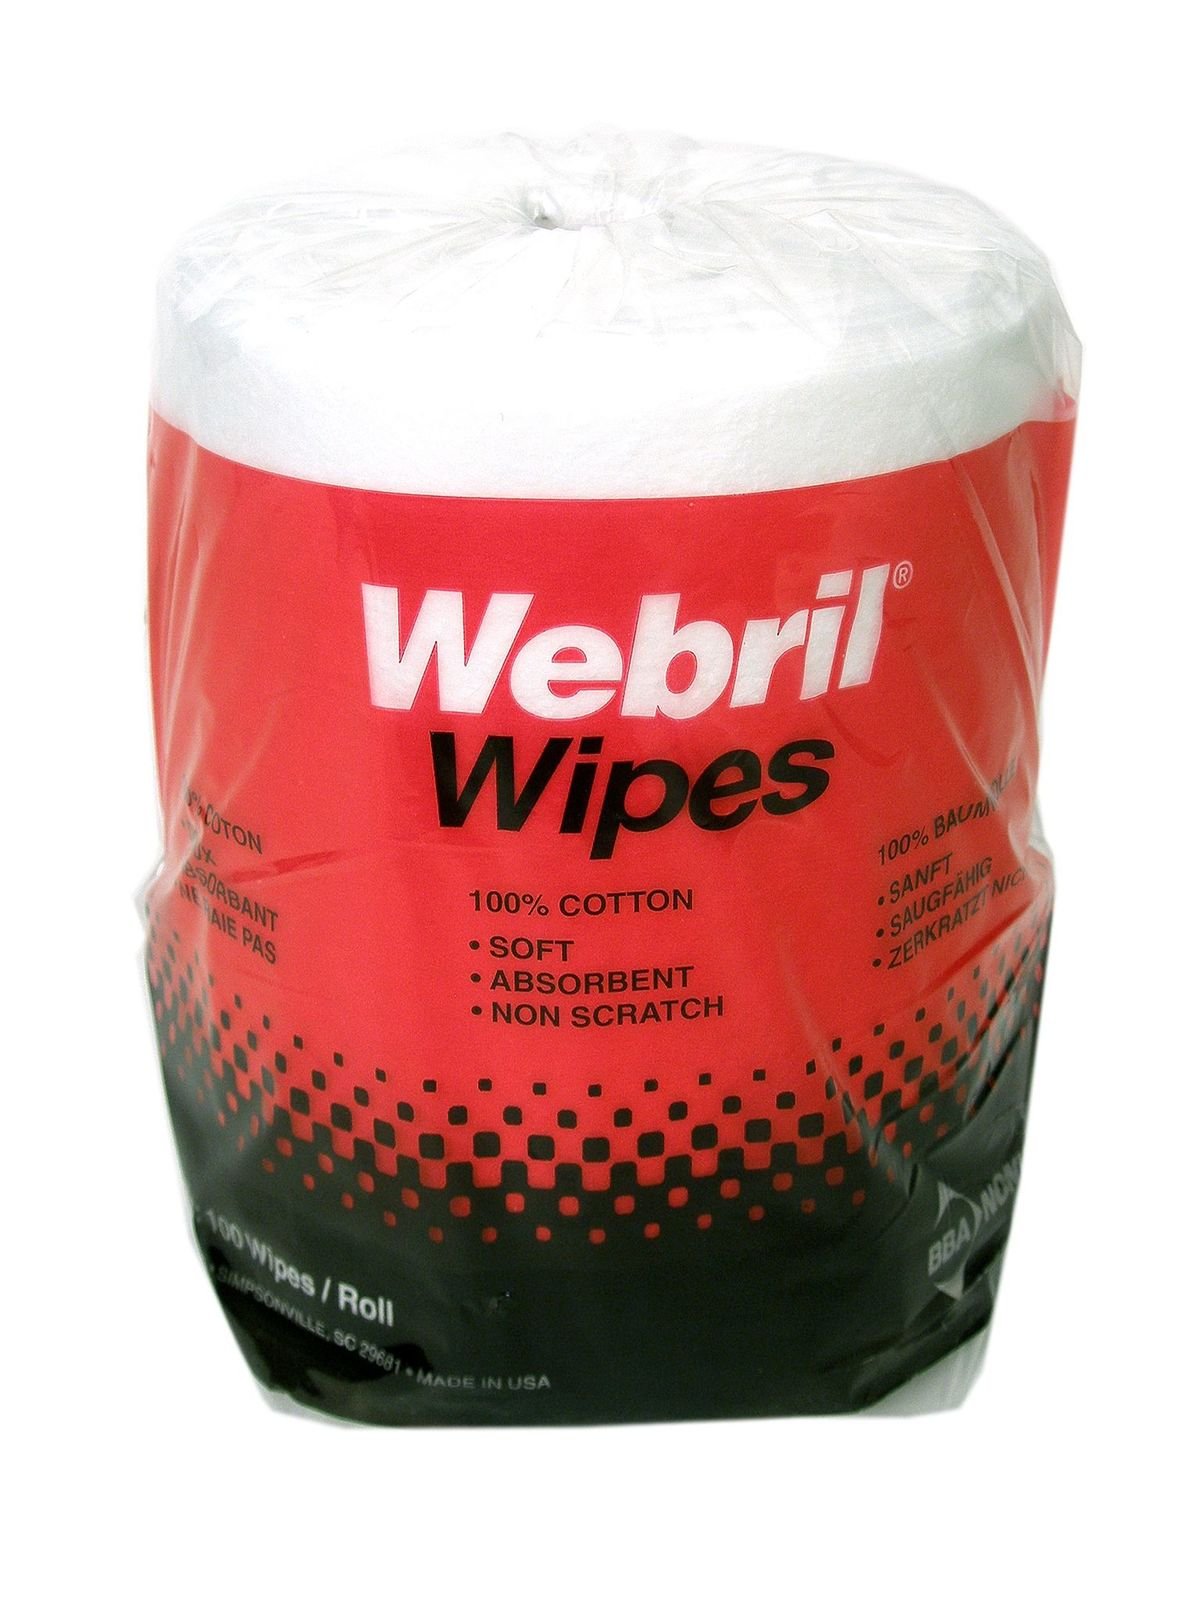 Webril Wipes